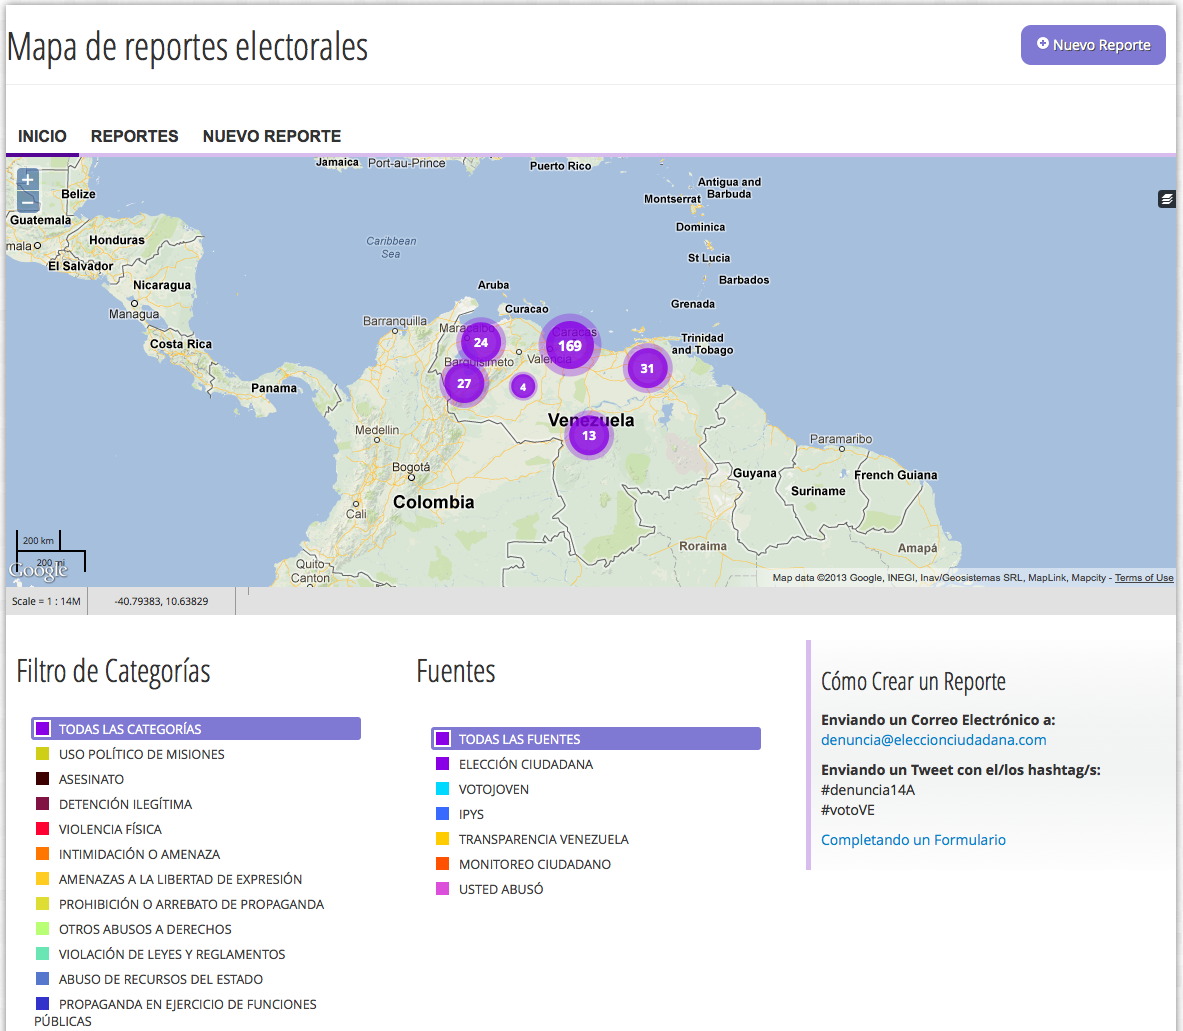 Elección ciudadana map